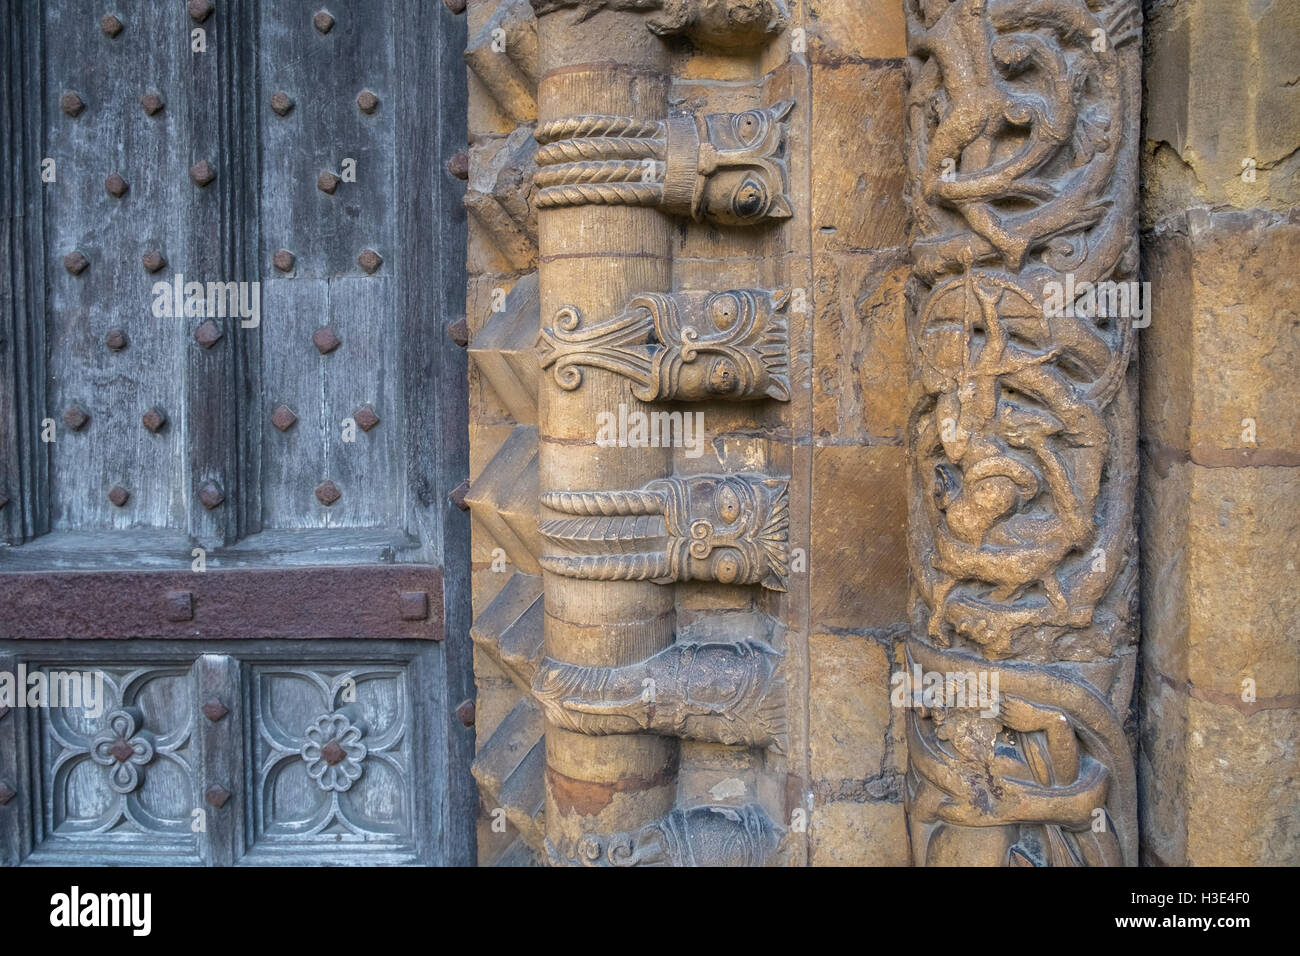 Close up détails architecturaux sur l'entrée ouest de la ville historique de la cathédrale de Lincoln, Lincolnshire, Angleterre, Royaume-Uni Banque D'Images